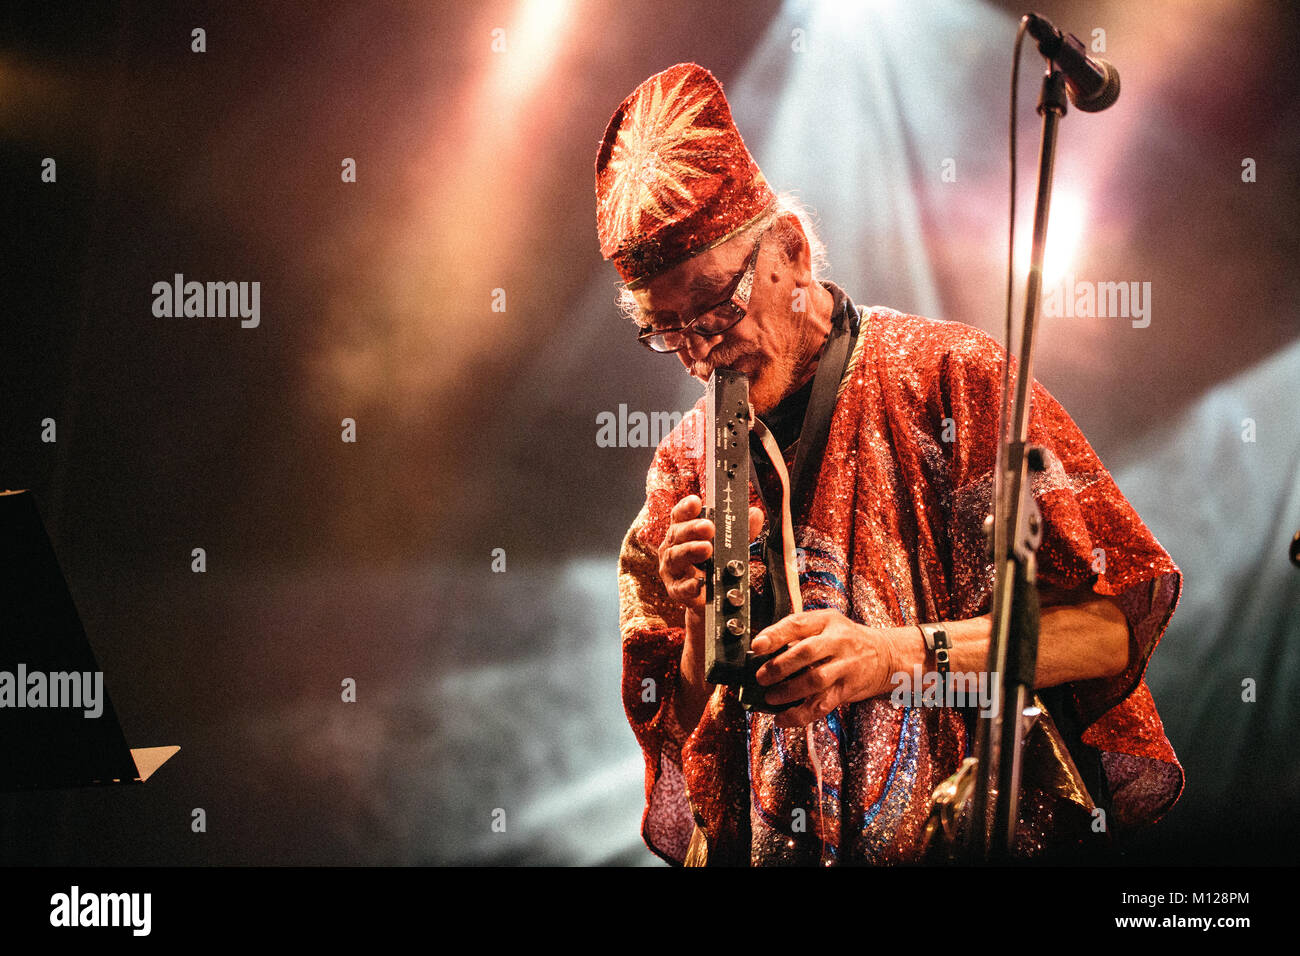 Die amerikanische Avantgarde Jazz Gruppe Sun Ra Arkestra führt ein Live Konzert in der polnischen Musik Festival Off Festival 2015 in Kattowitz. Nach dem Tod Sun Ra Arkestra im Jahr 1993 hatte die von verschiedenen Bandleaders und ist heute unter der Leitung von saxophonist Marshall Allen (siehe Bild). Polen, 08/08 2015. Stockfoto